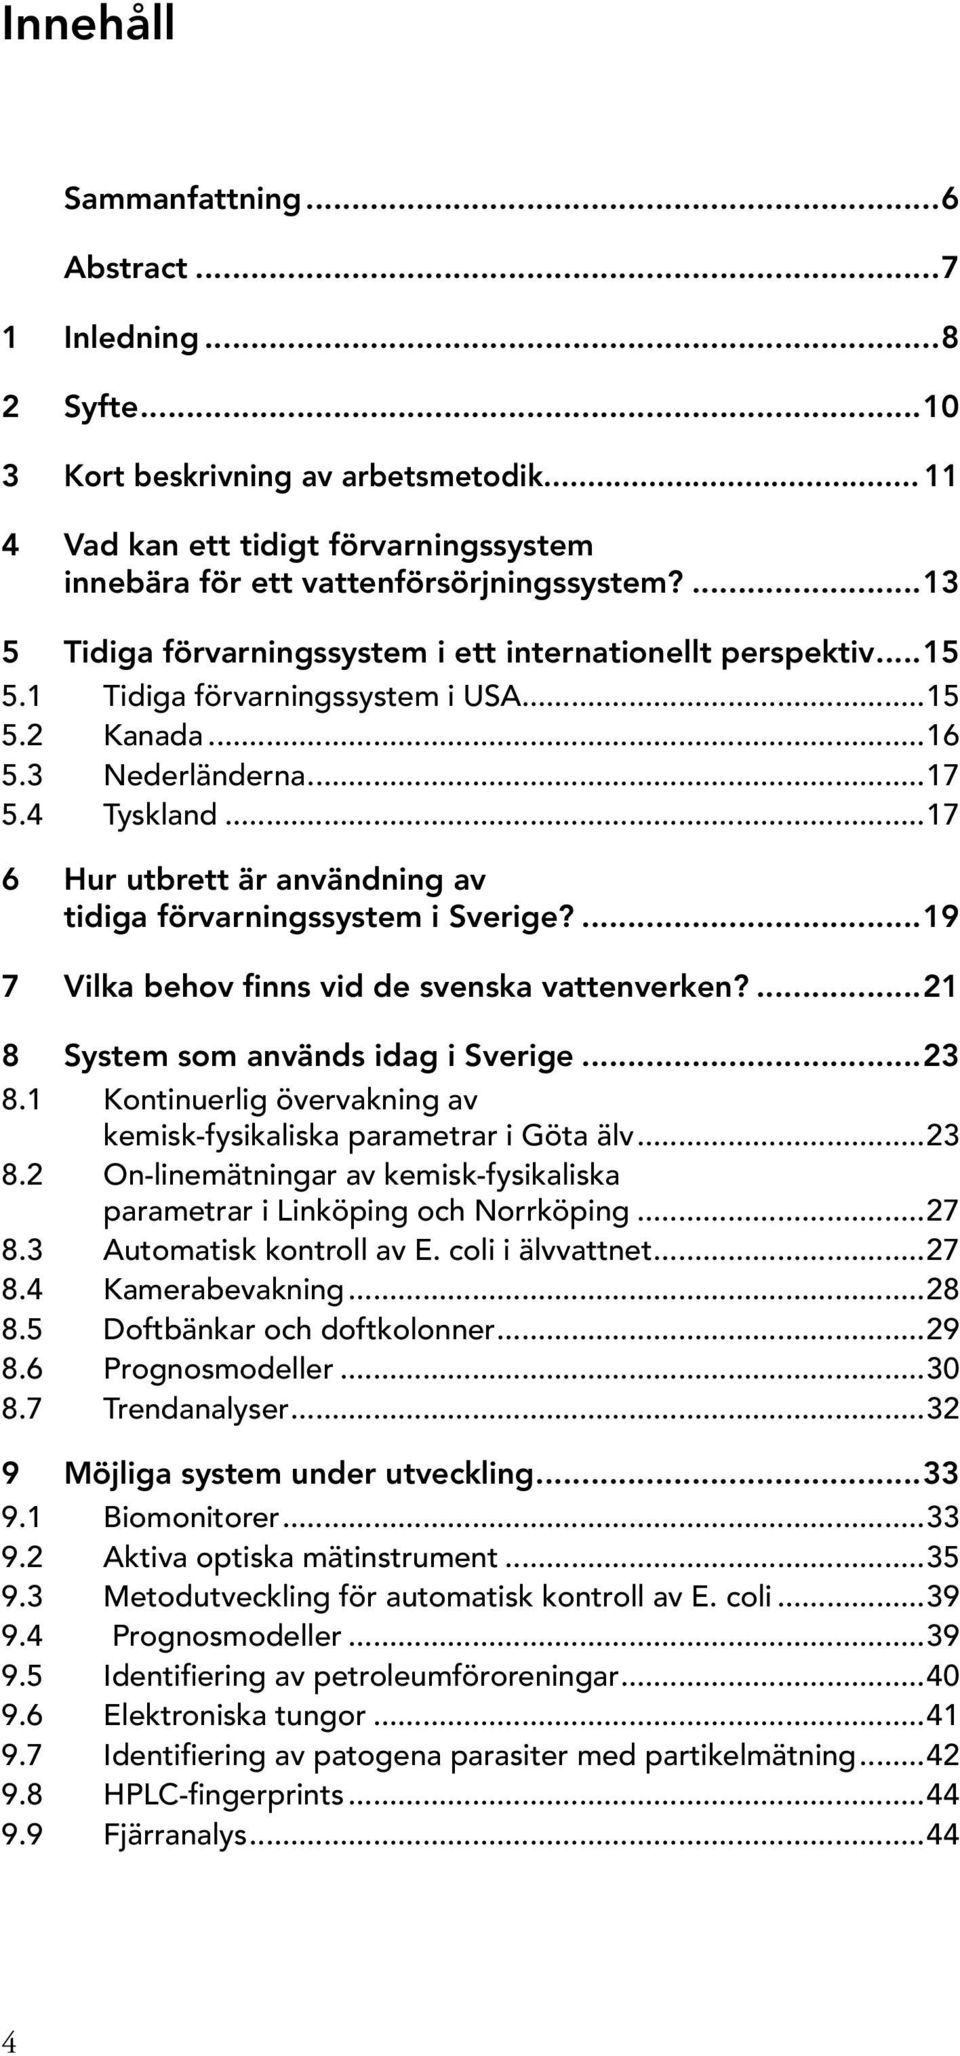 ..17 6 Hur utbrett är användning av tidiga förvarningssystem i Sverige?...19 7 Vilka behov finns vid de svenska vattenverken?...21 8 System som används idag i Sverige...23 8.